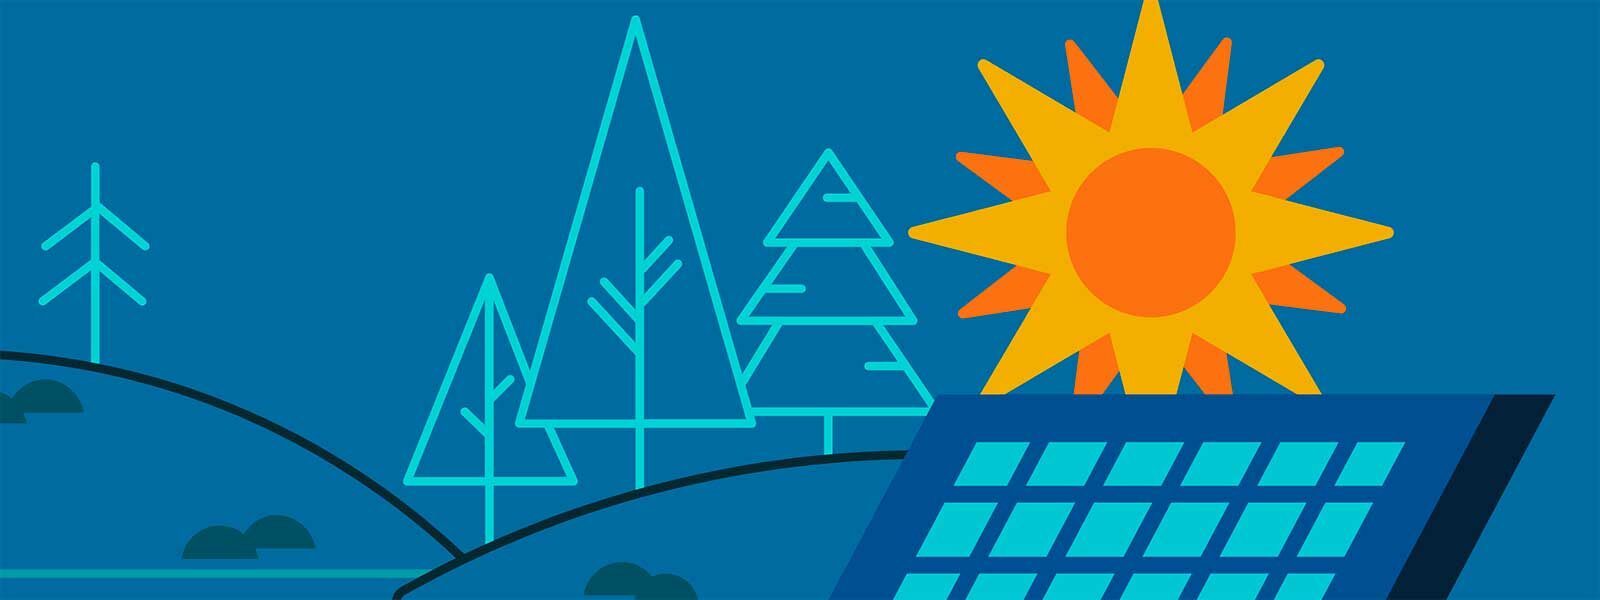 Solaranlagen - Sonne, Bäume, Solaranlage - Banner